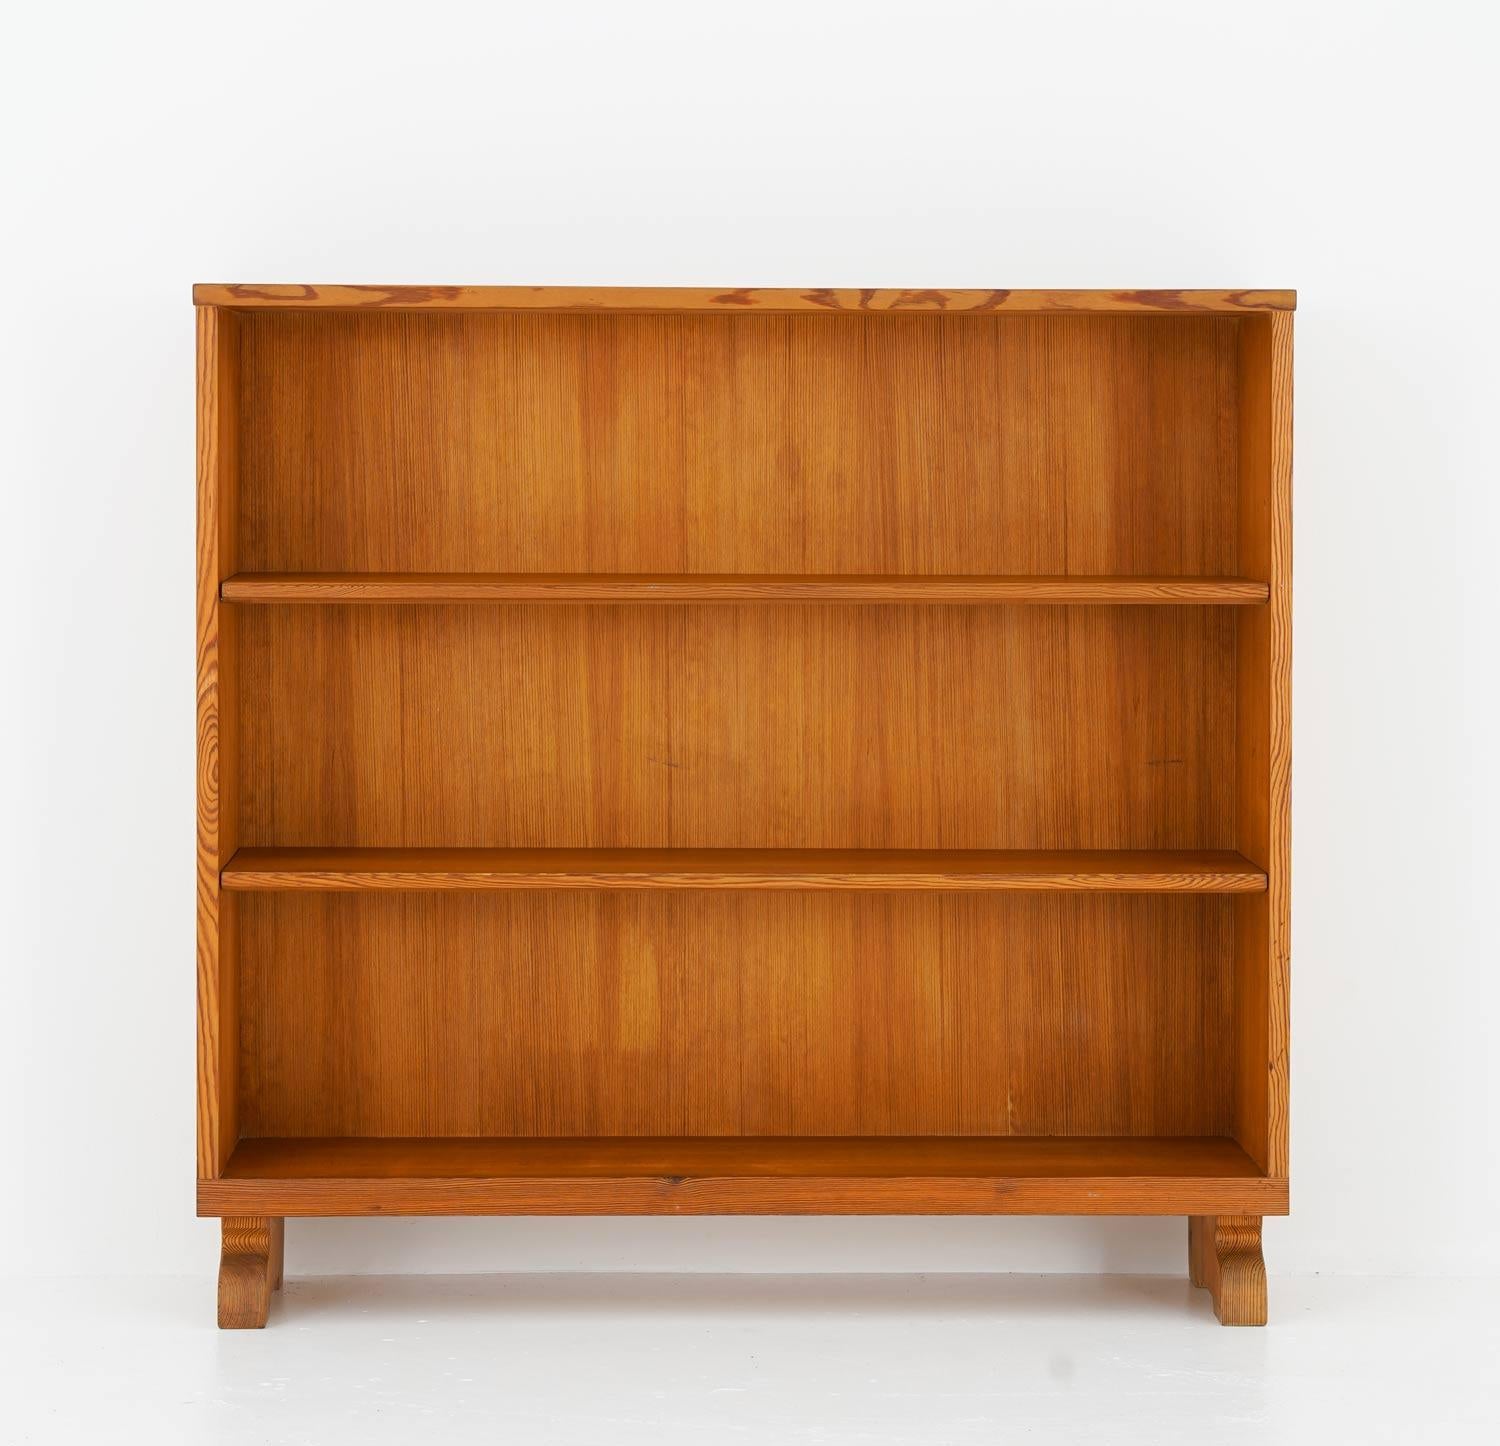 Une belle étagère conçue par Carl Malmsten, fabriquée dans son propre studio, années 1940. 
Cette pièce se marie bien avec les meubles en pin d'autres designers suédois de l'époque, comme Axel Einar Hjorth.

Condition : Bon état d'origine avec